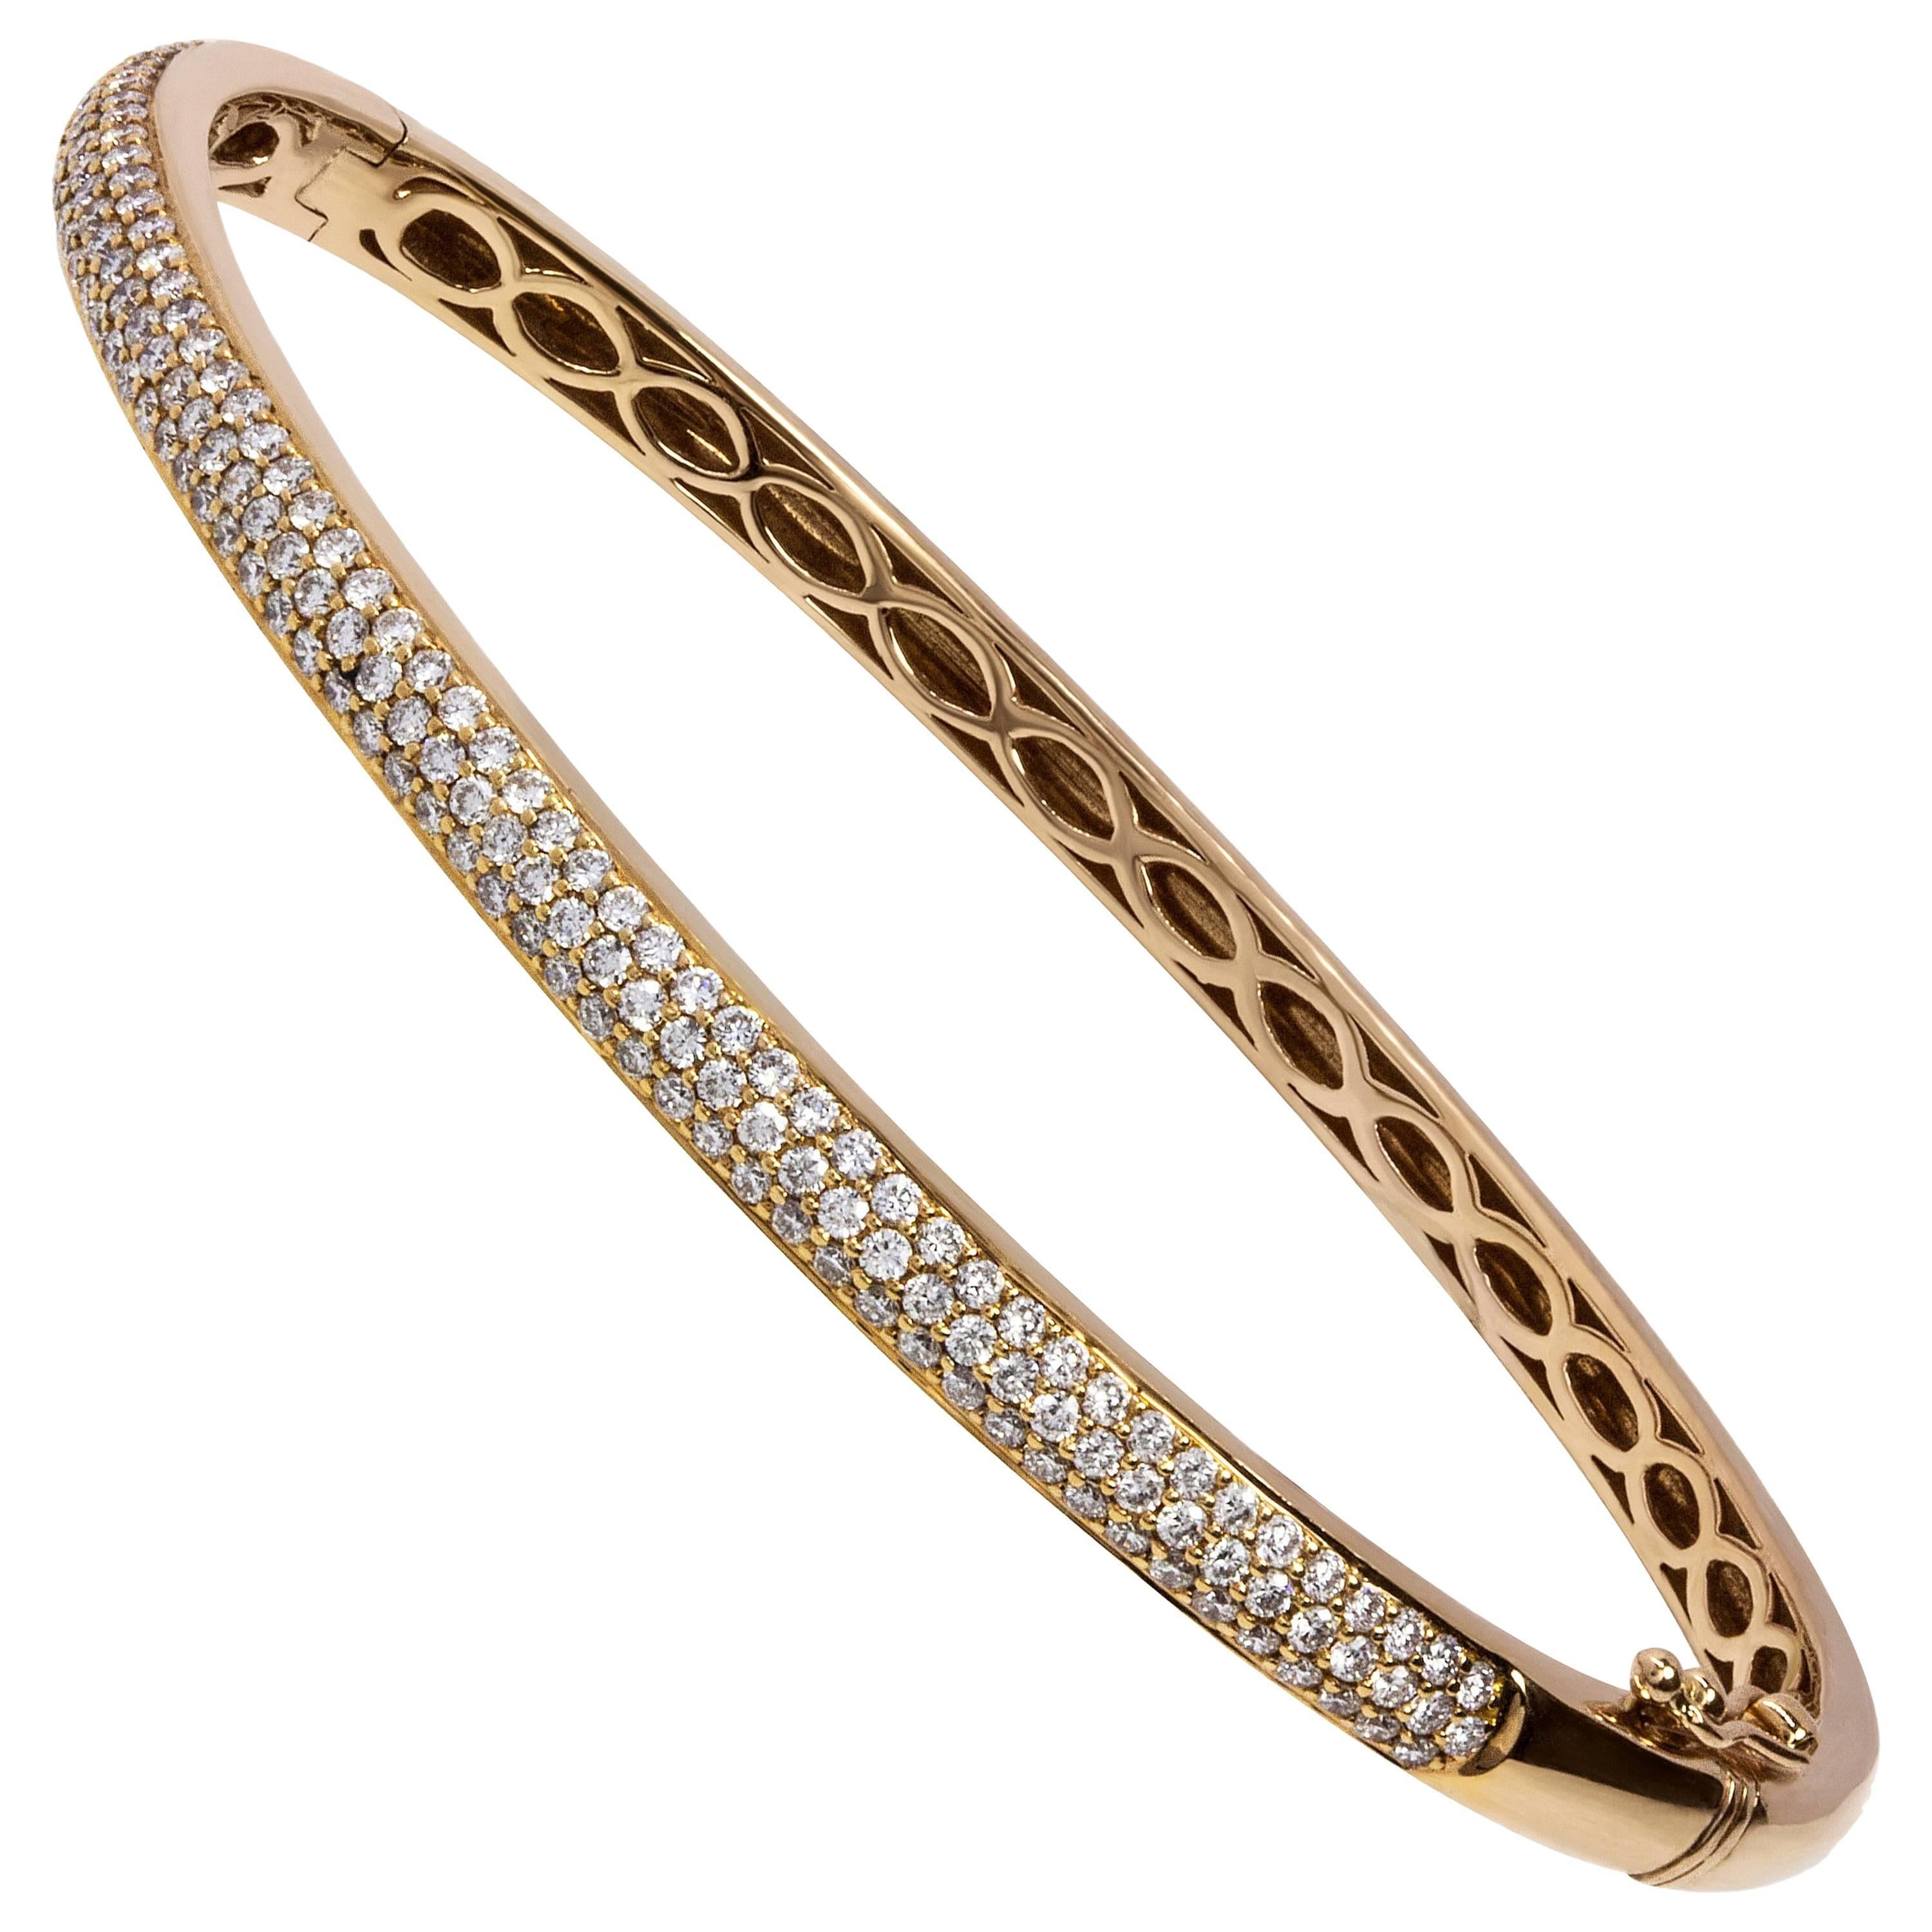 Pavé Set Diamond Bangle Bracelet in 18 Karat Rose Gold